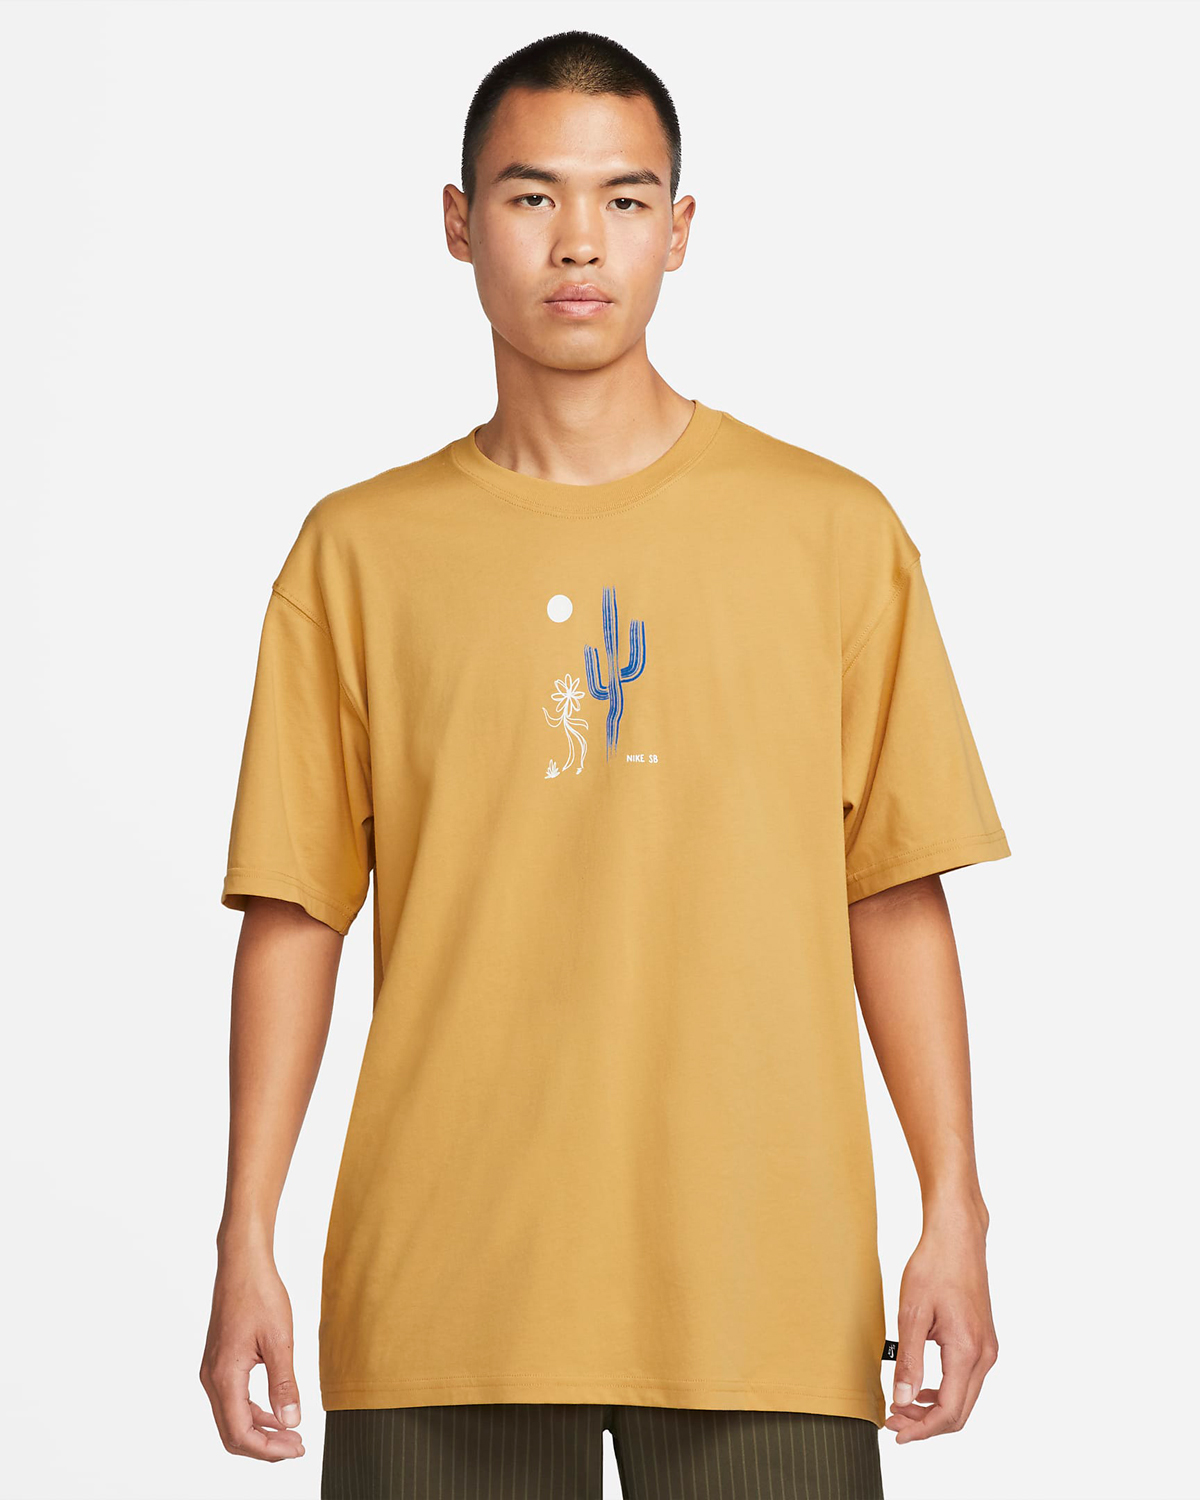 nike-sb-skate-t-shirt-sanded-gold